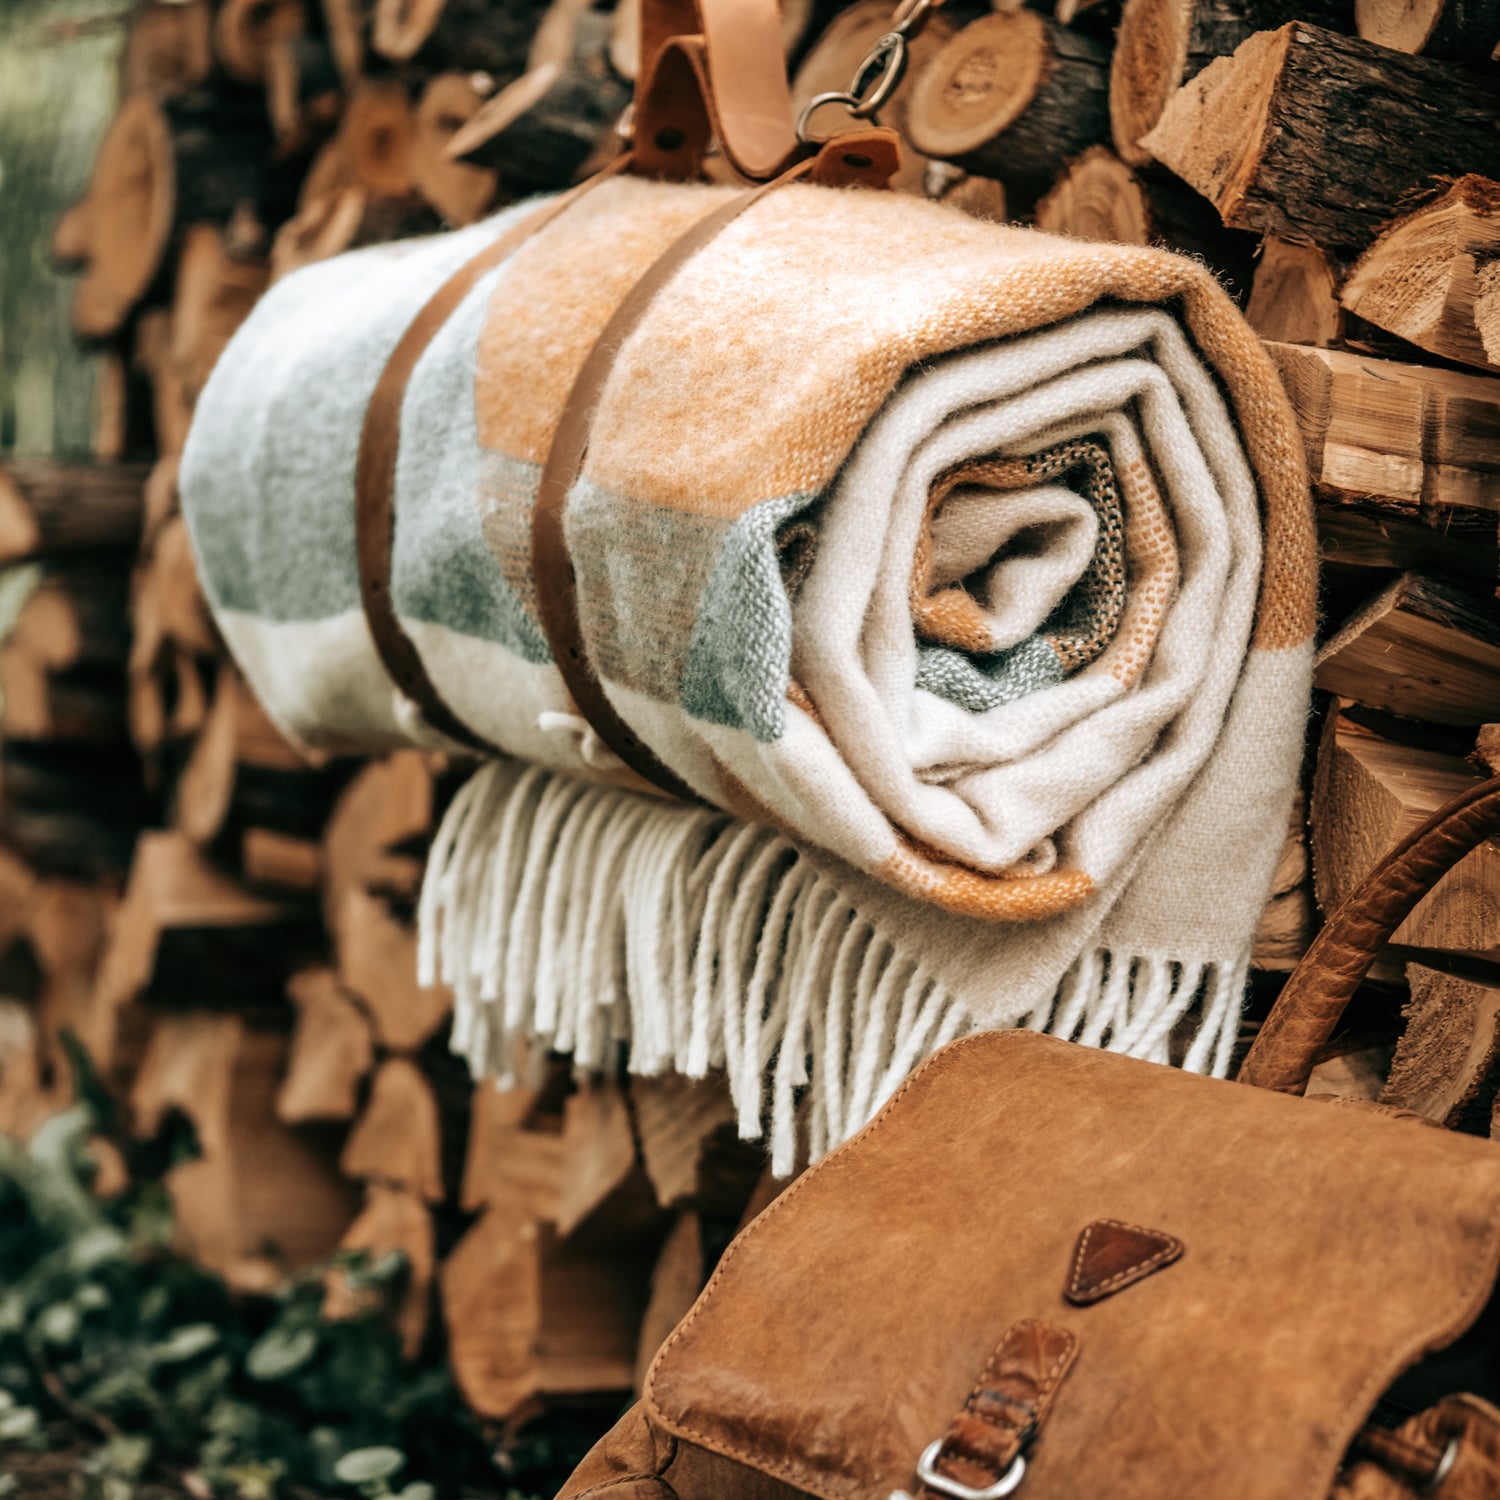 Eine zusammengerollte Outdoordecke hängt an einem Lederriemen auf übereinander gestapelten Holzscheiten